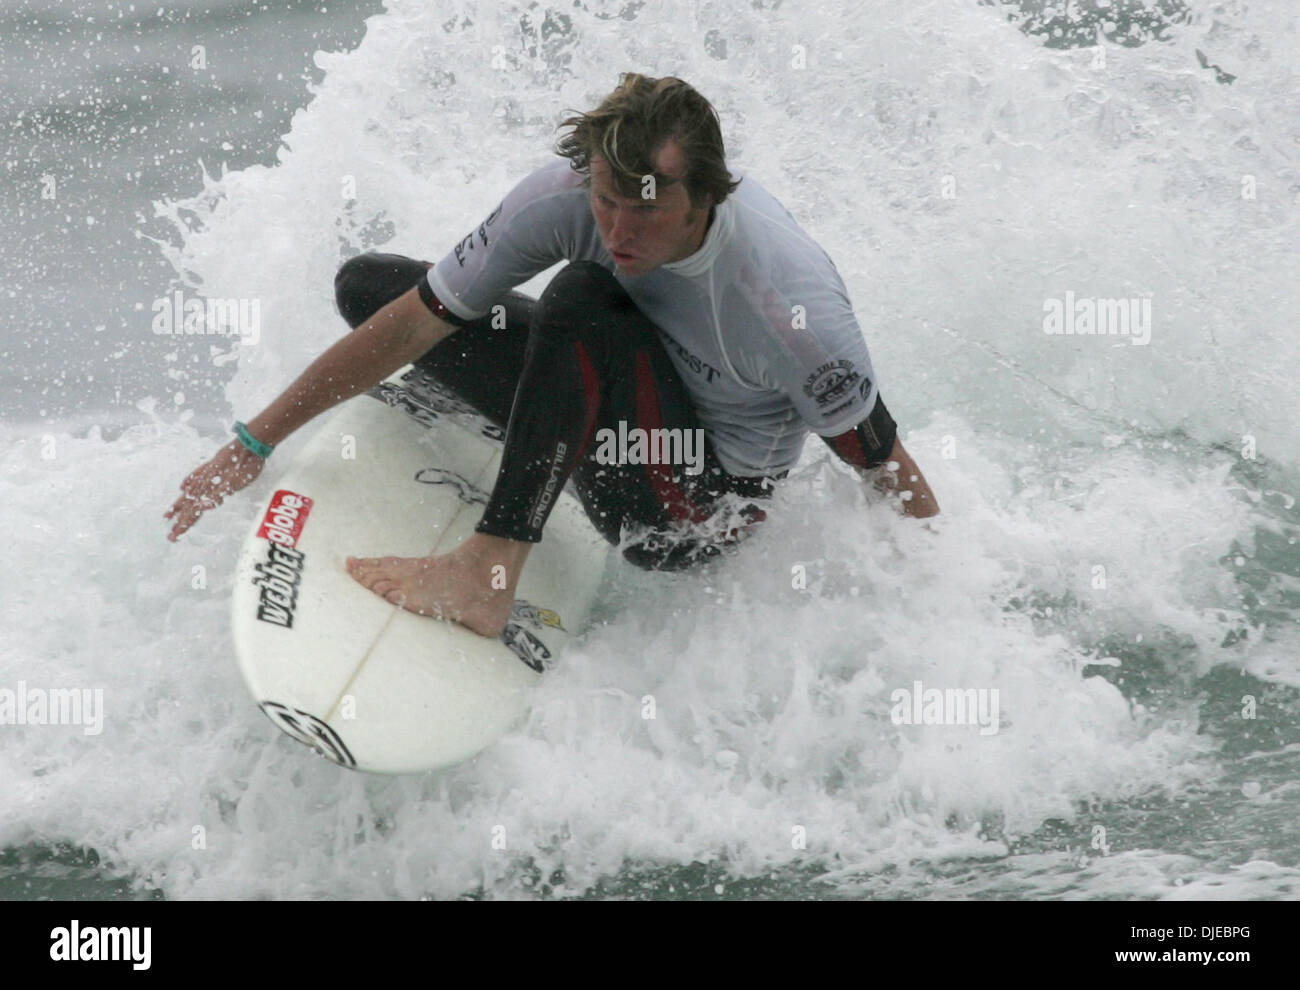 Aug 01, 2004 ; Huntington Beach, CA, USA ; AUS surfer TAJ BURROW après les quarts de finale à l'US Open 2004 Honda championnats de surf à Huntington Beach. Taj Burrow de l'Australie a gagné l'événement conseil court. Banque D'Images